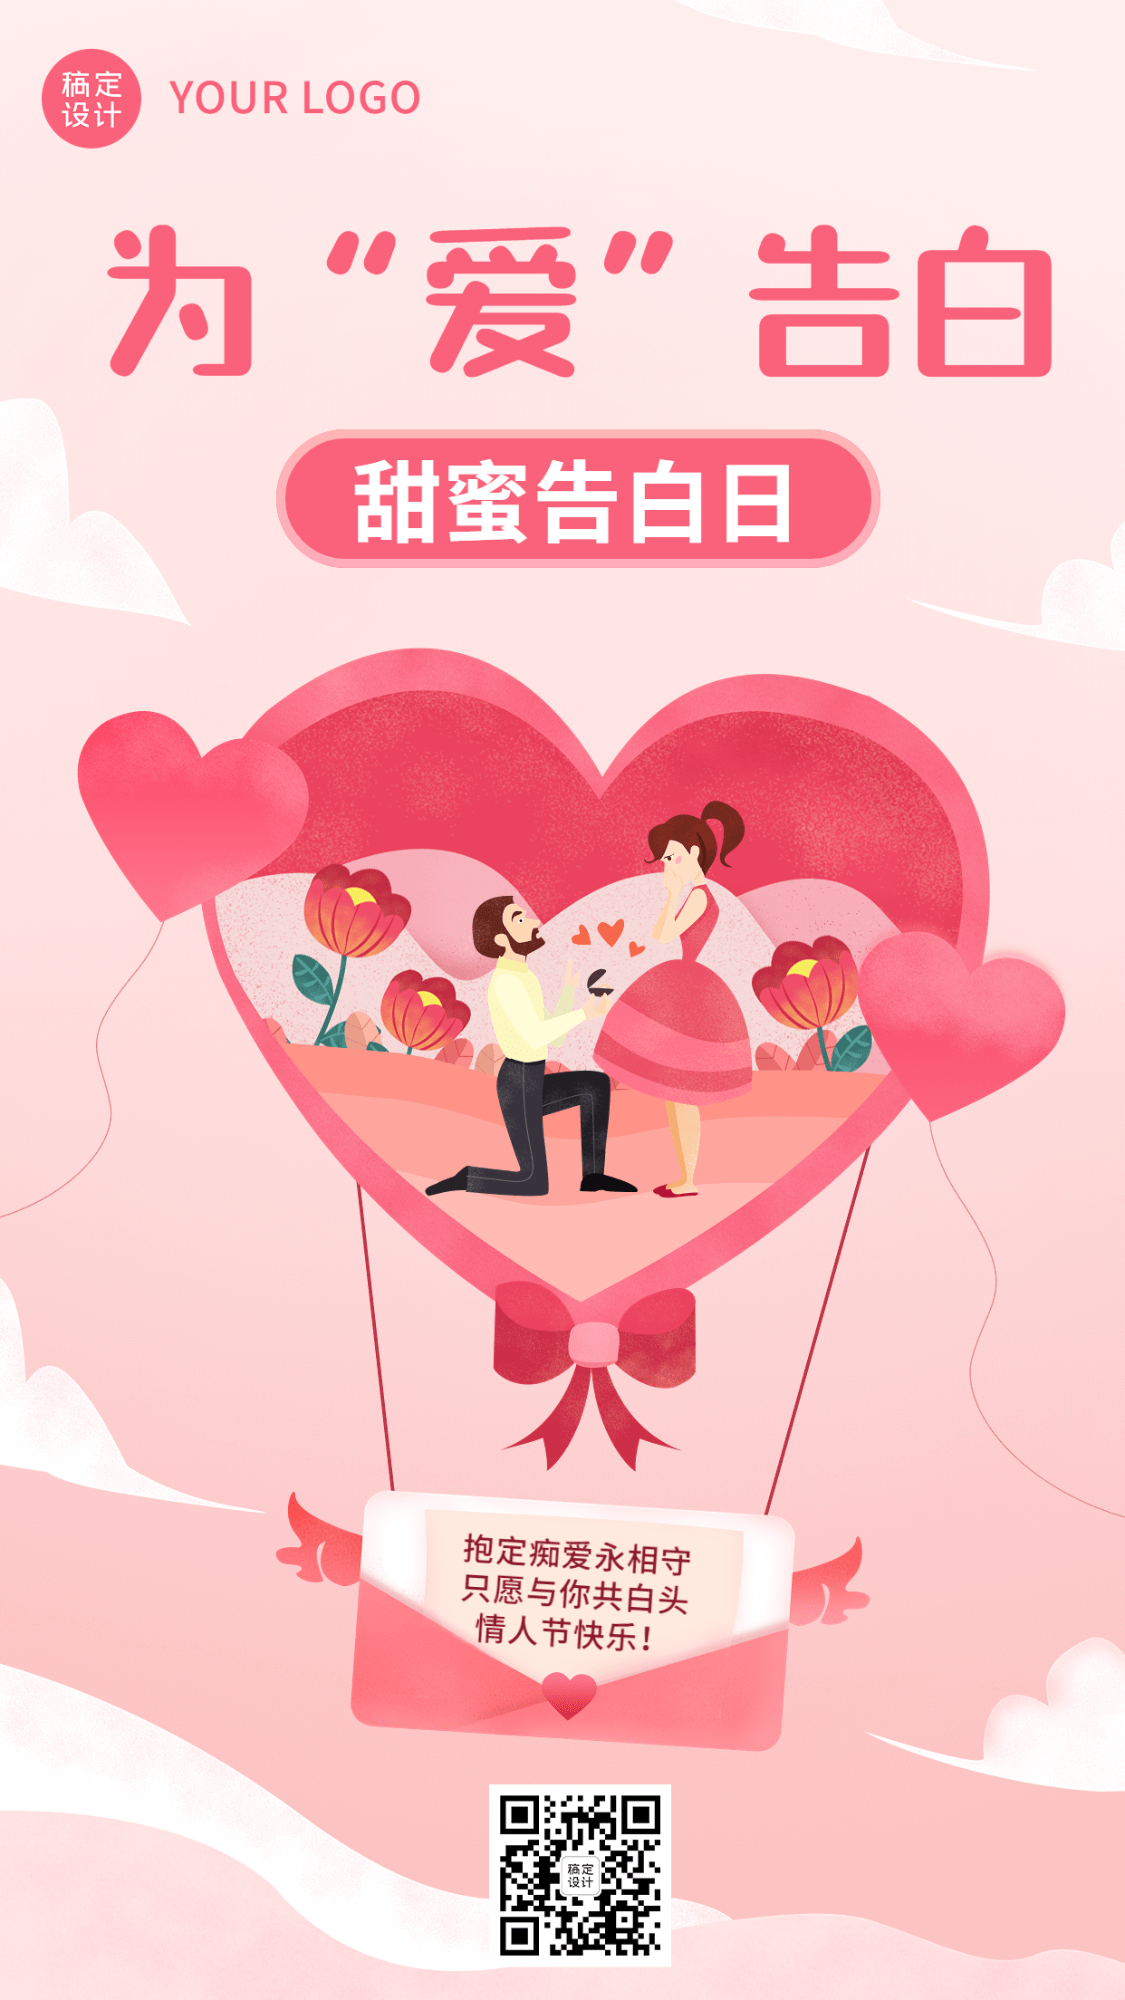 情人节节日祝福手机海报